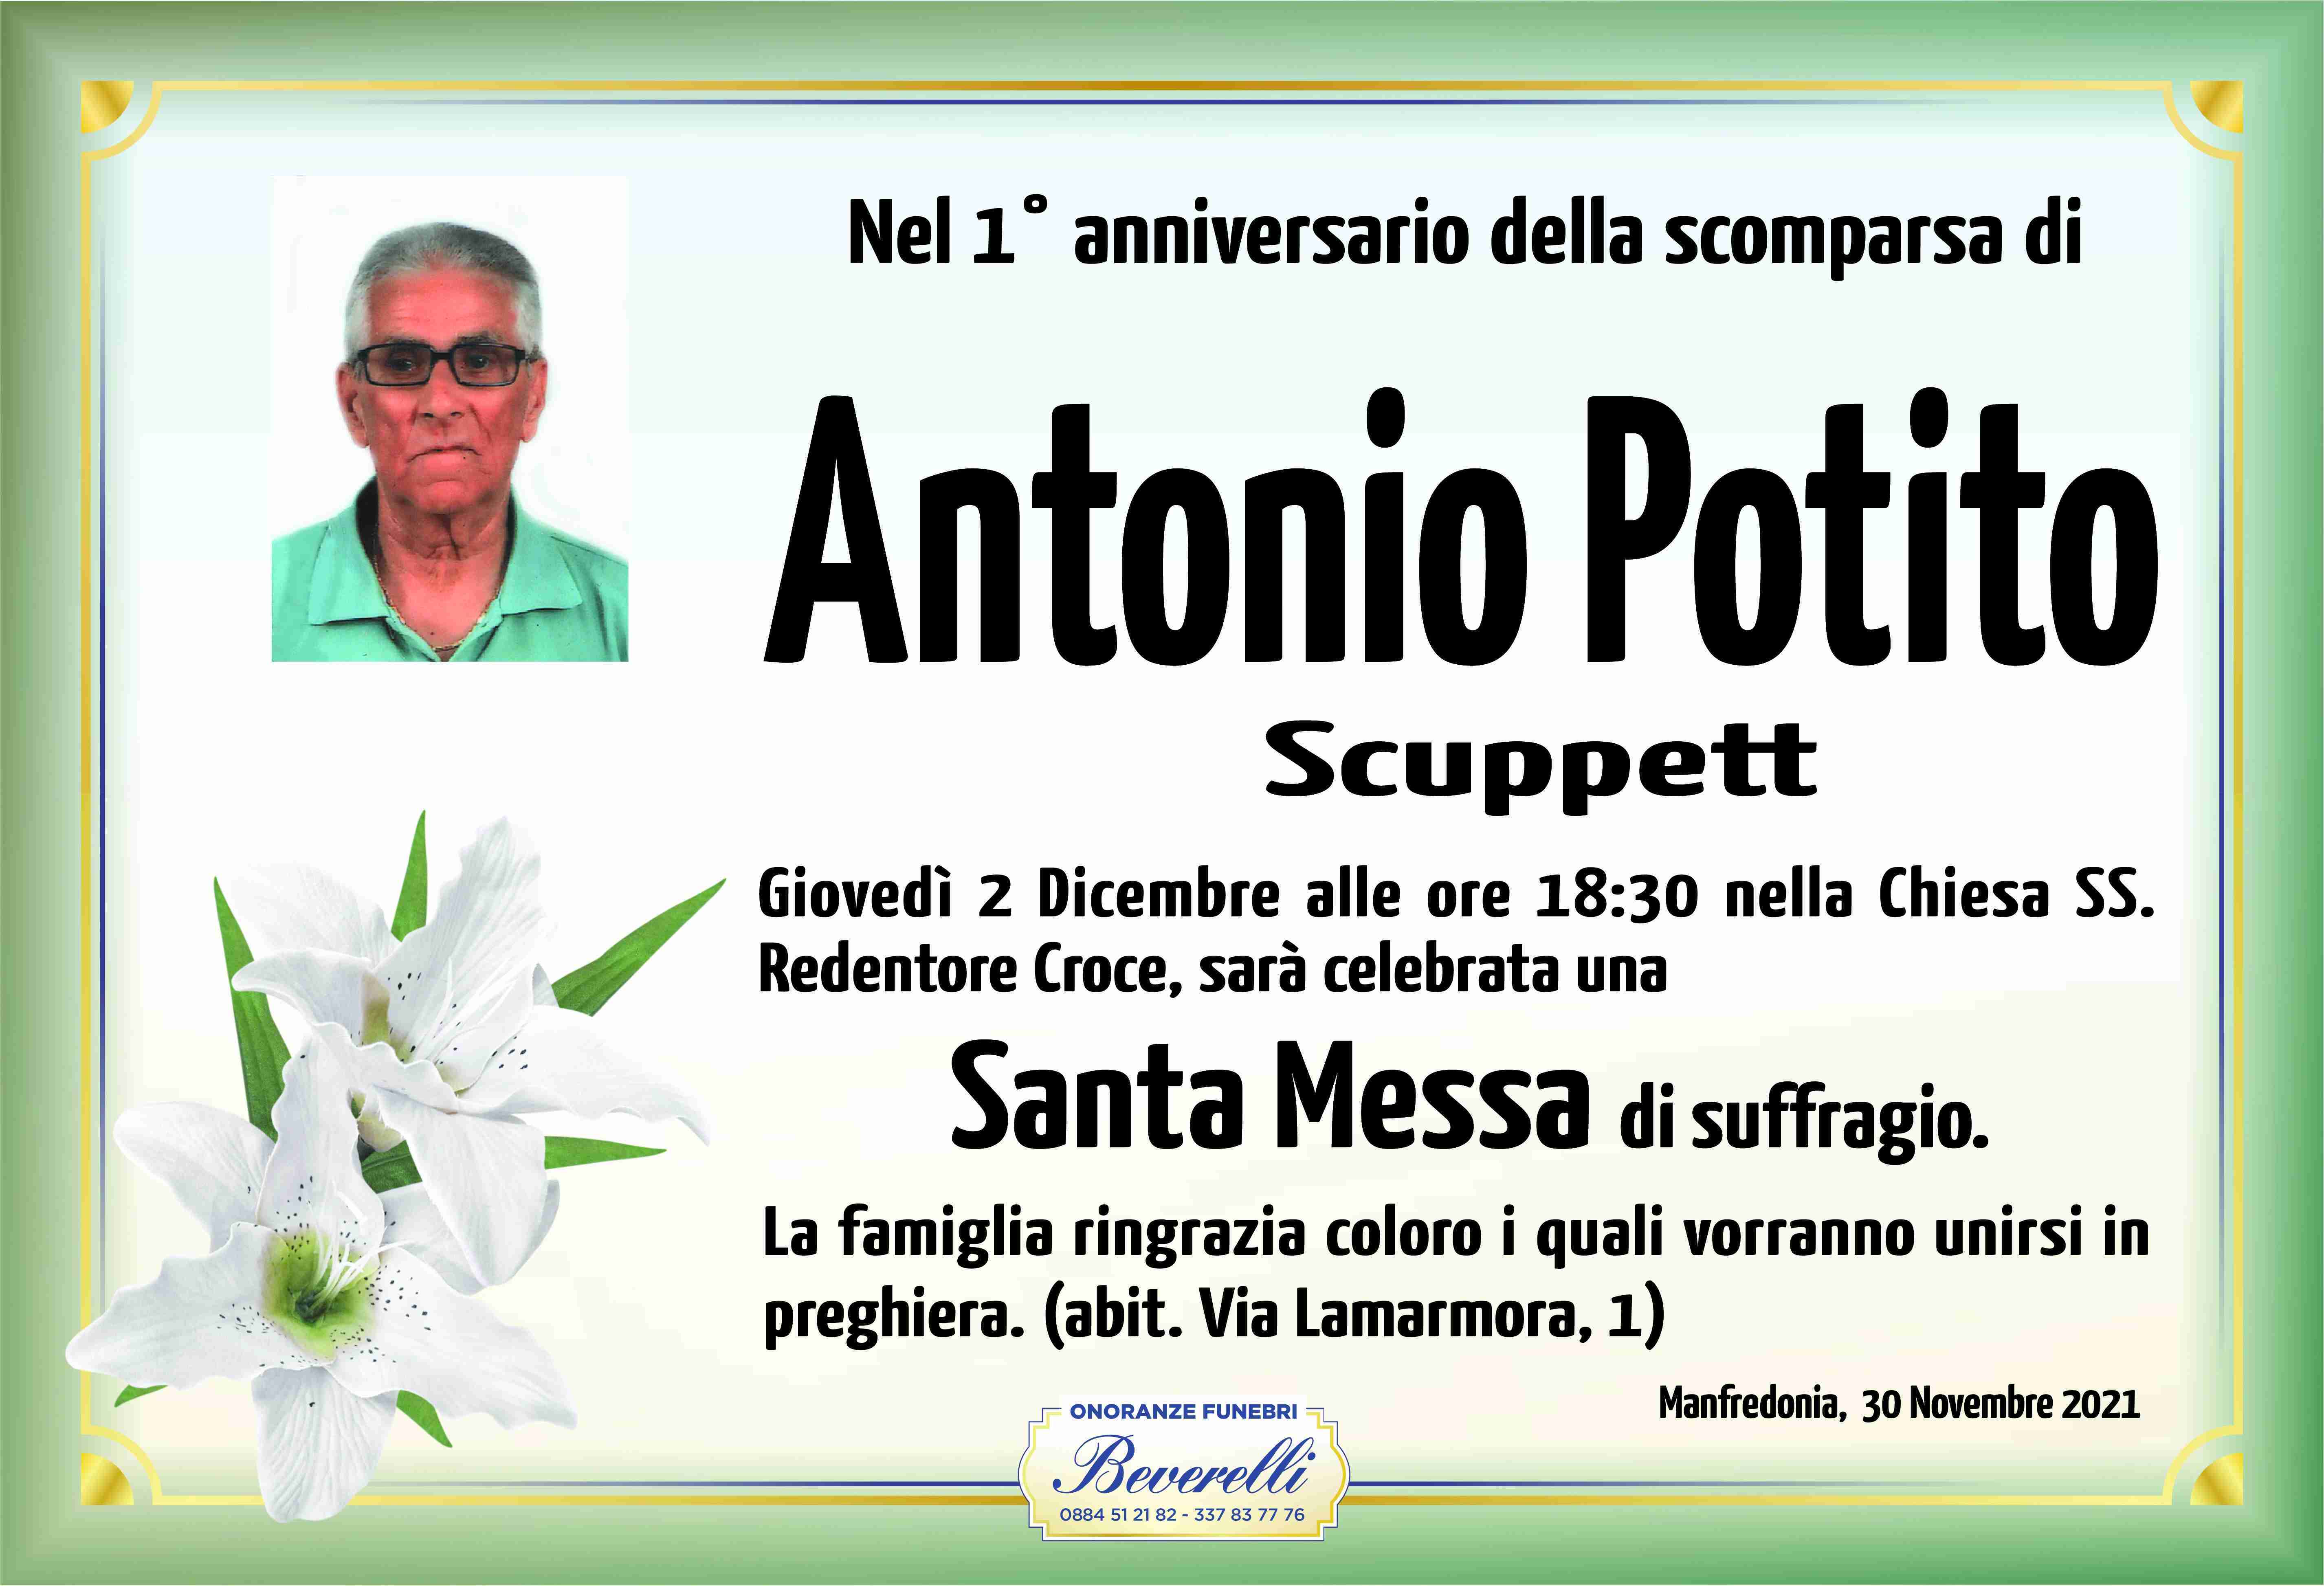 Antonio Potito